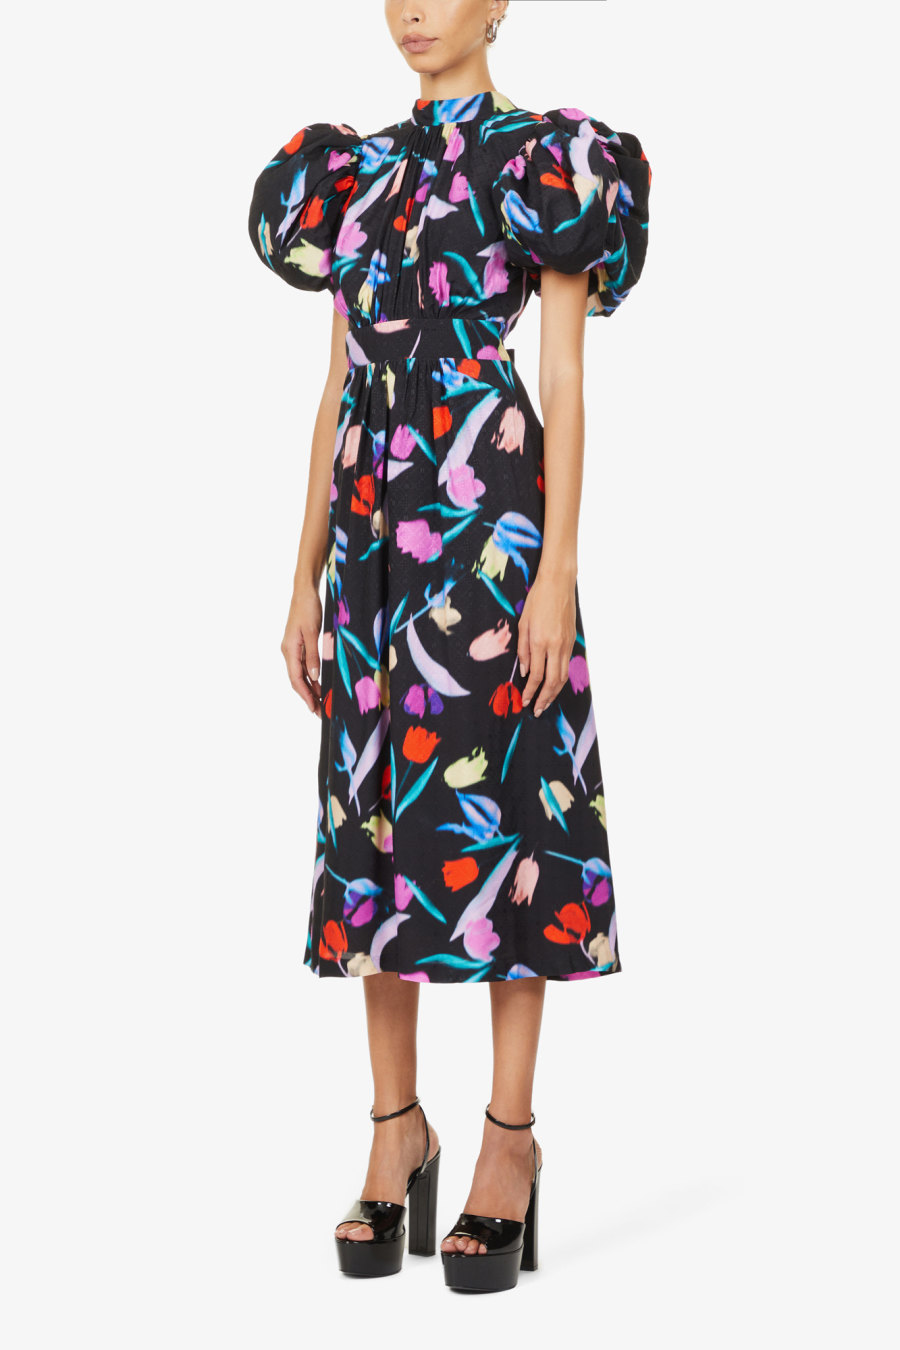 Rent Noon Abstract Pattern Dress - ROTATE BIRGER CHRISTENSEN | Selfridges